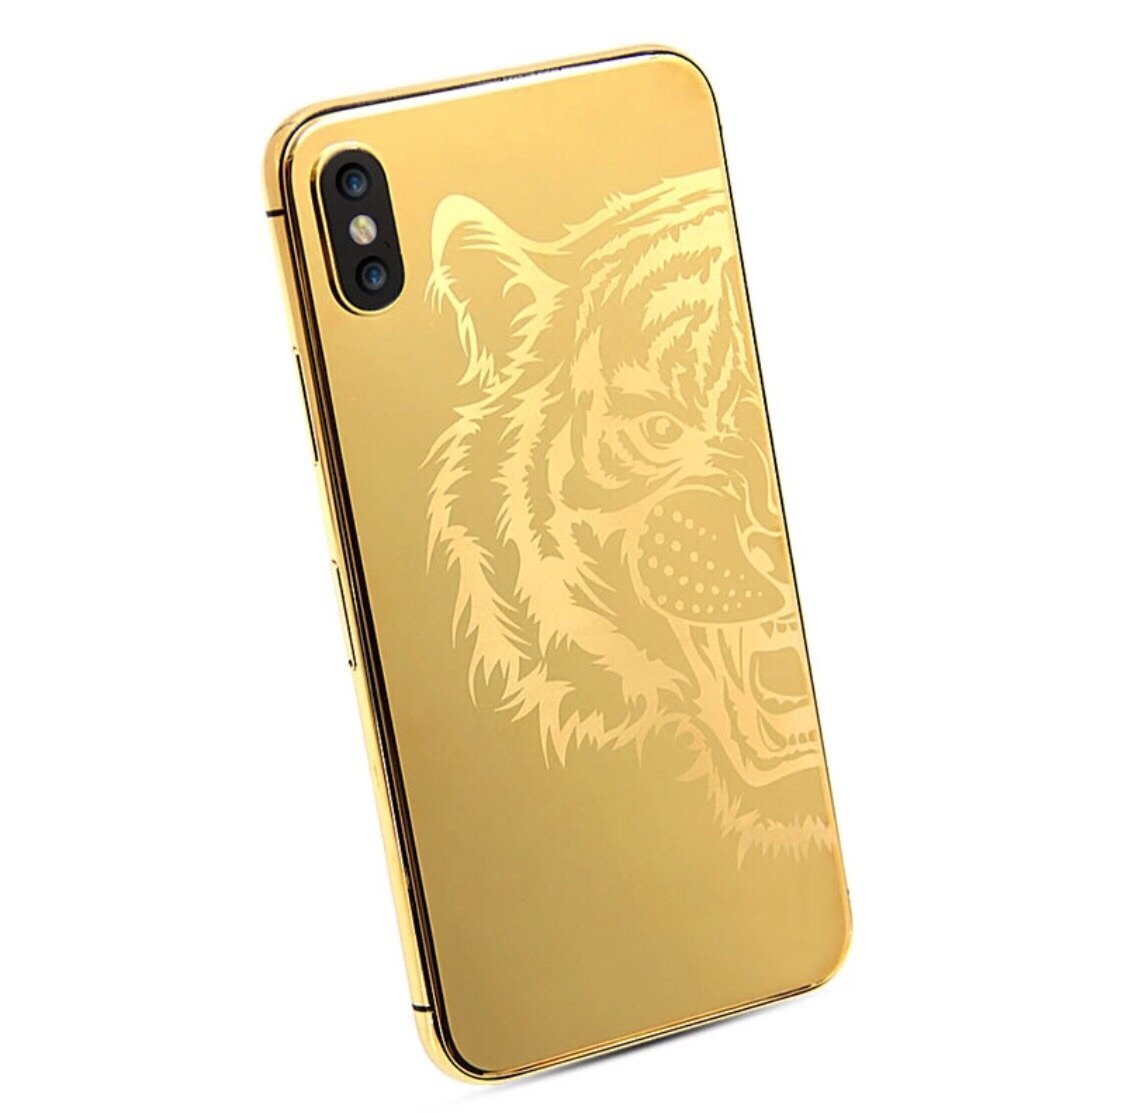 Iphone XC Max Gold 112